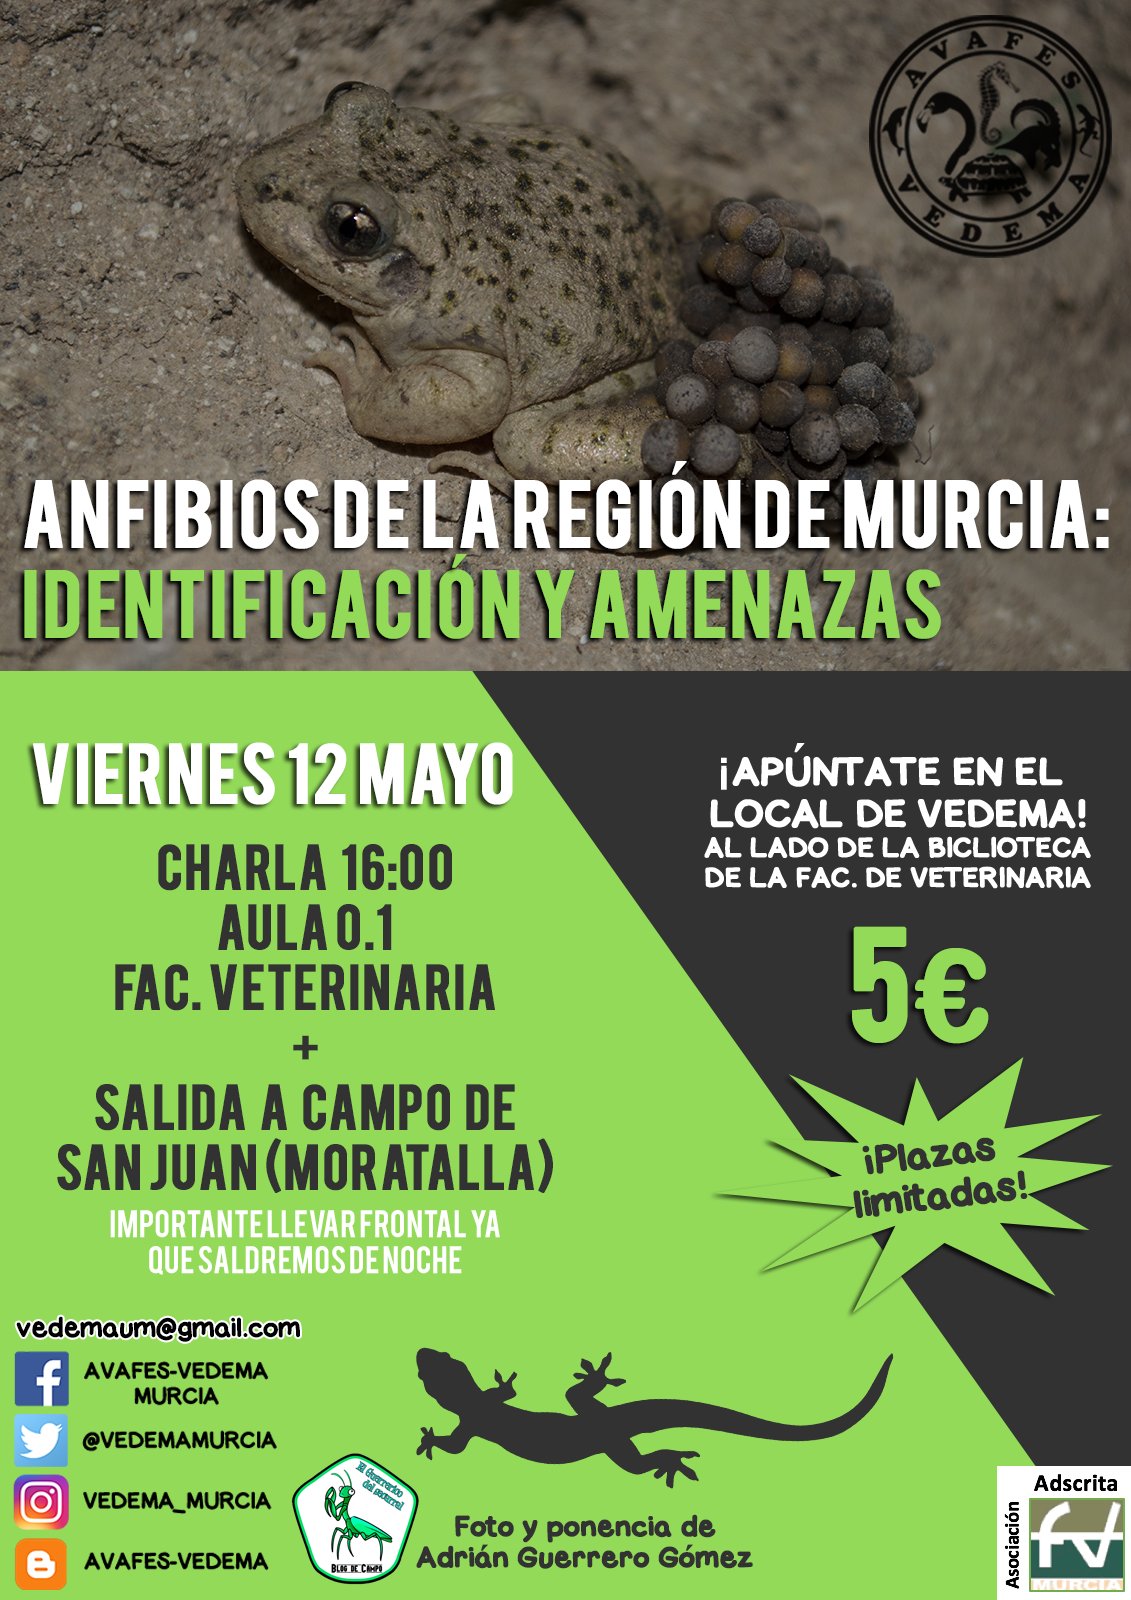 Anfibios de la región de Murcia: identificación y amenazas